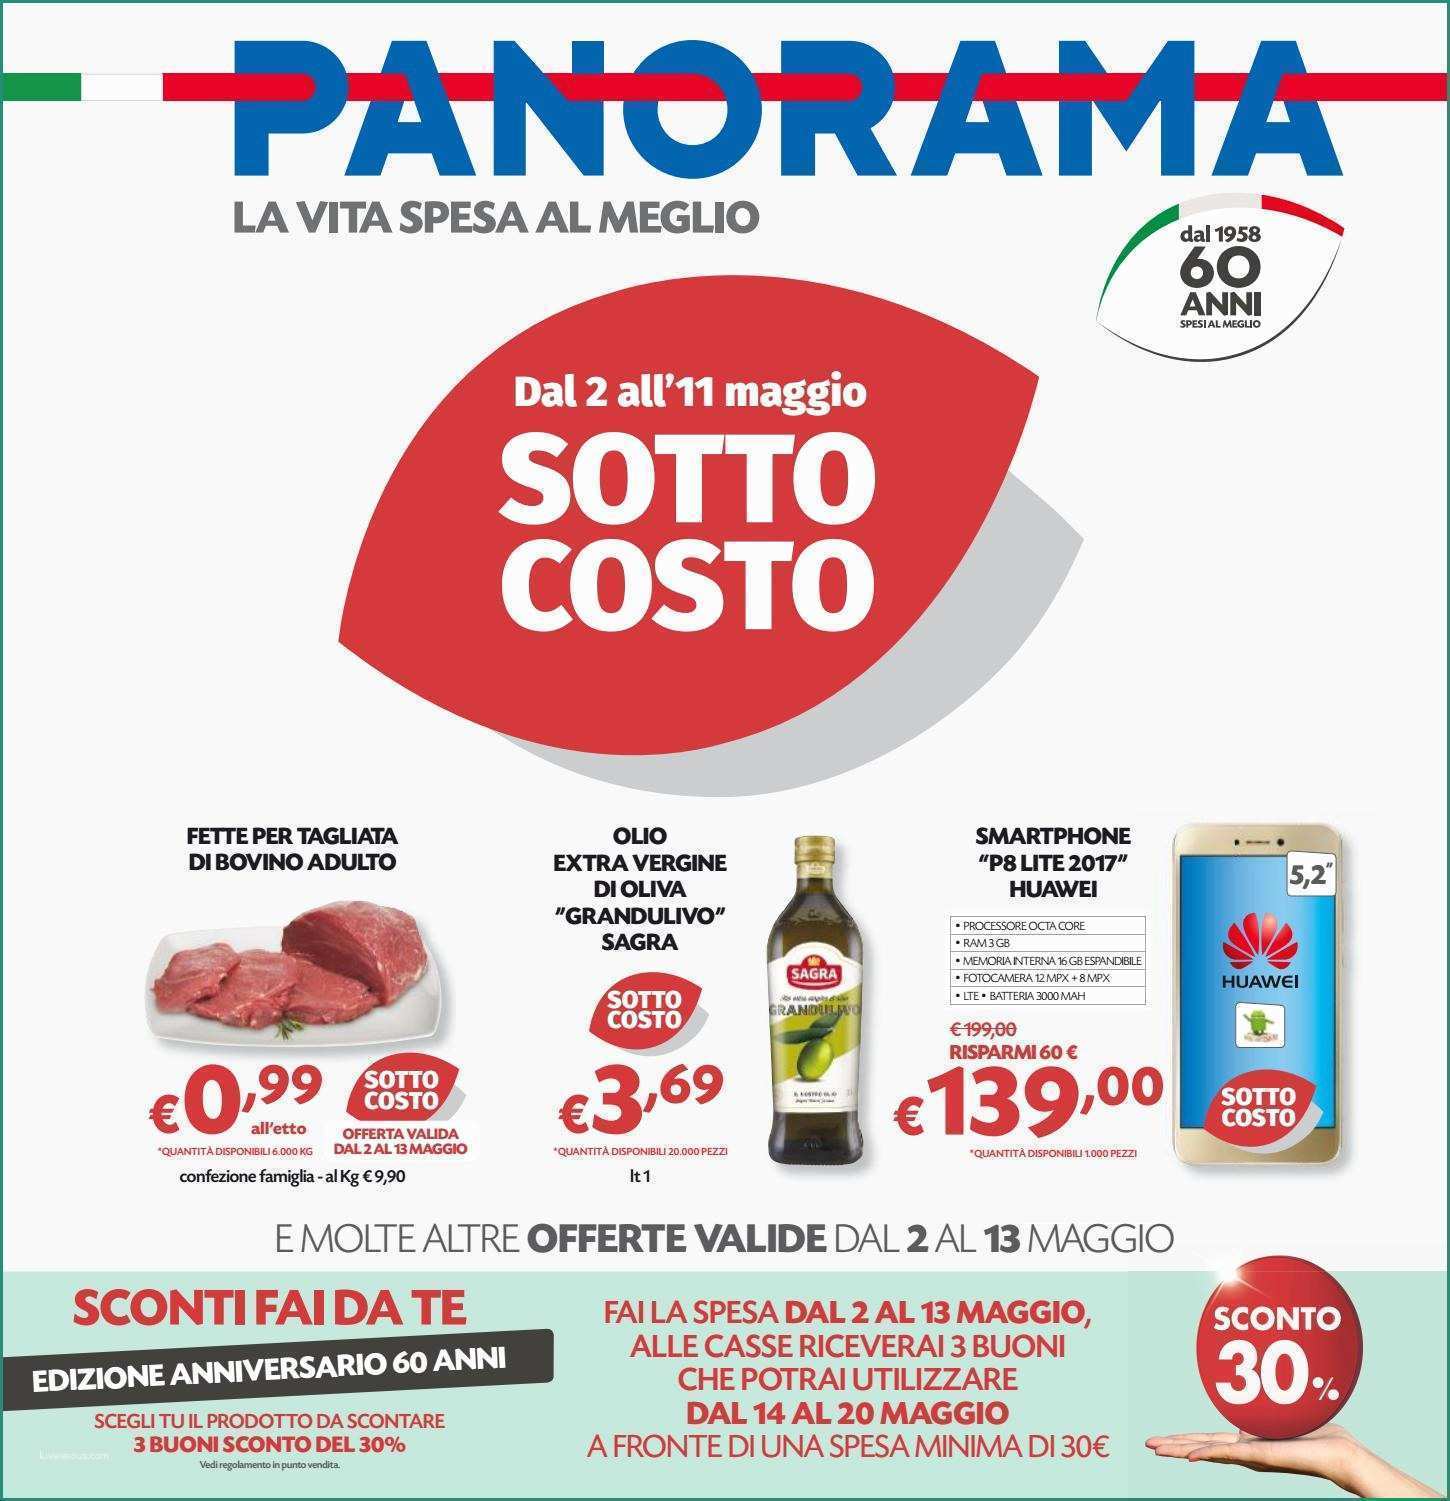 Acqua Alcalina In Bottiglia Marche E Panorama 11mag by Best Of Volantinoweb issuu